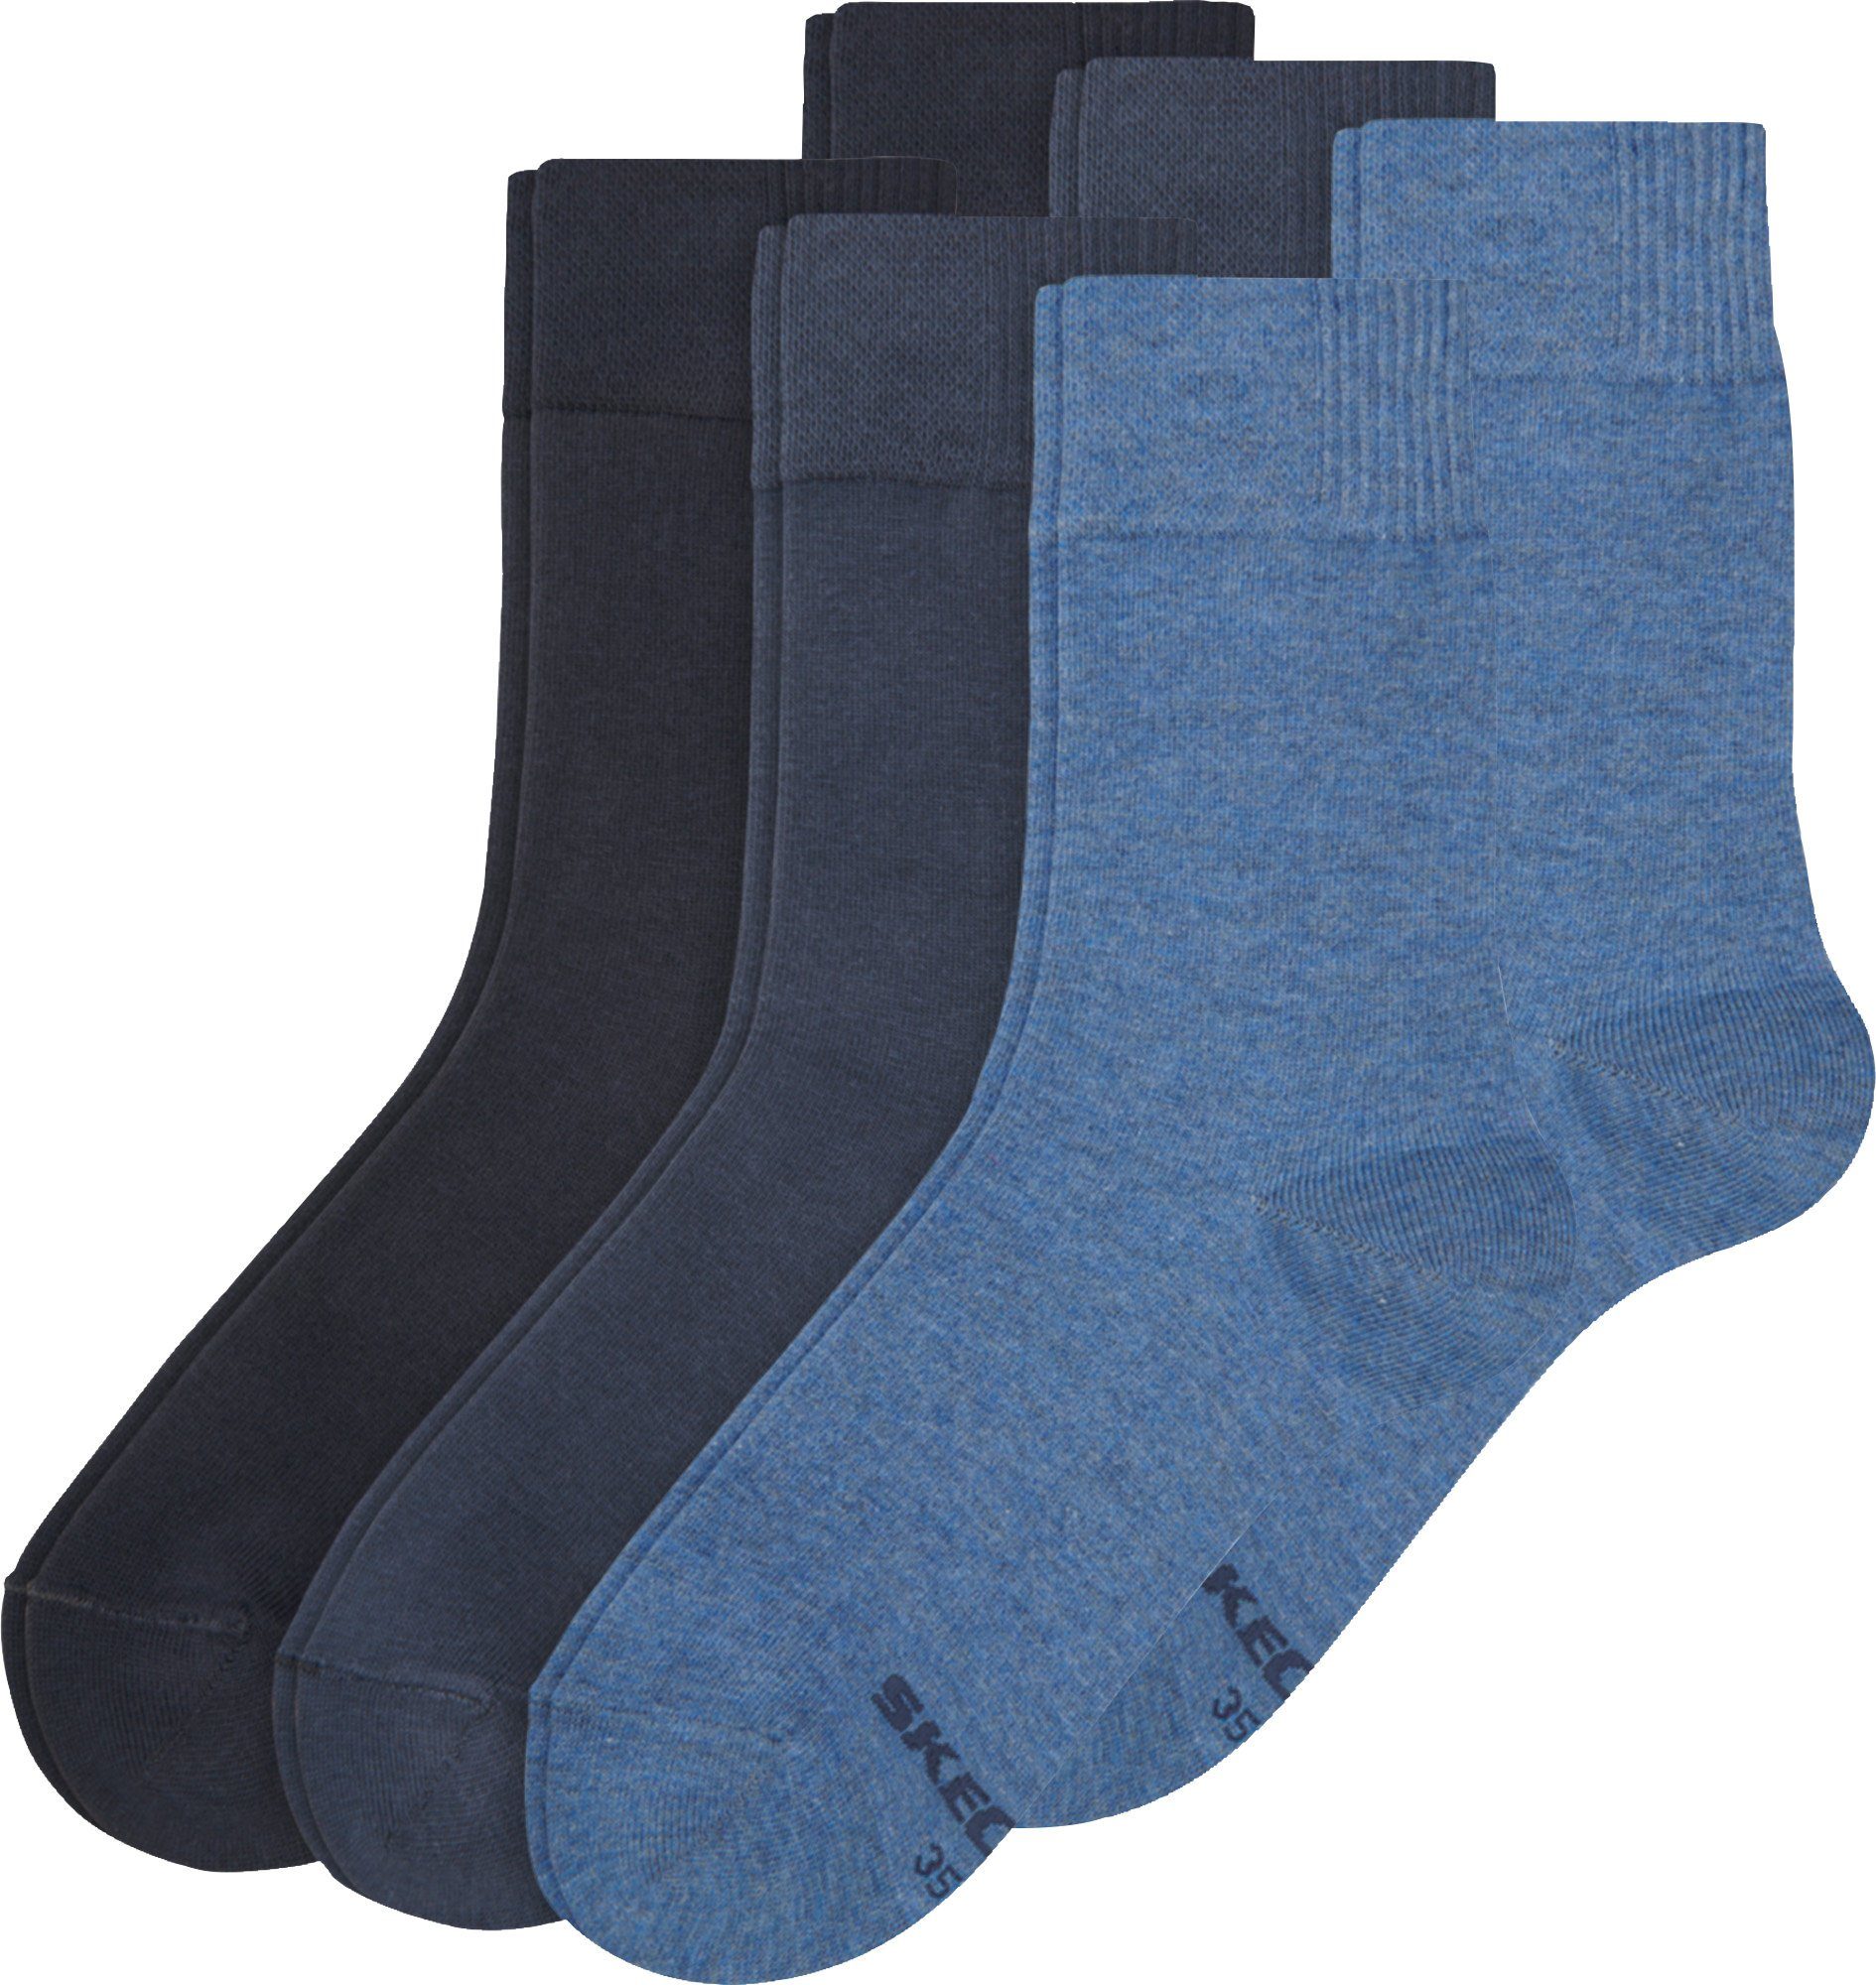 Skechers Socken Damen-Socken 6 Paar Uni blau